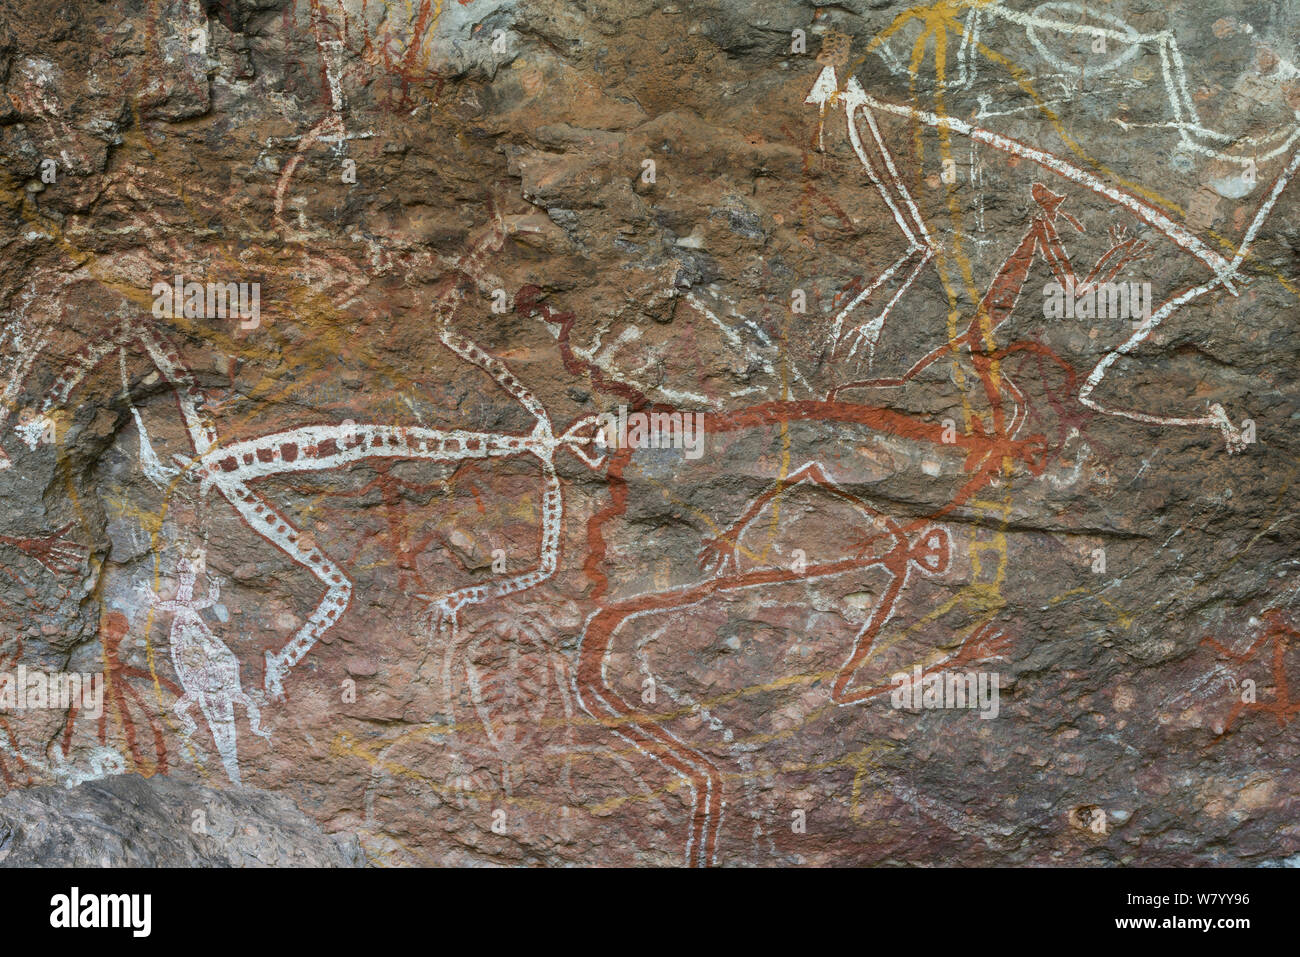 Art rupestre aborigène de Kakadu National Park, Territoire du Nord, Australie. Décembre 2012. Banque D'Images